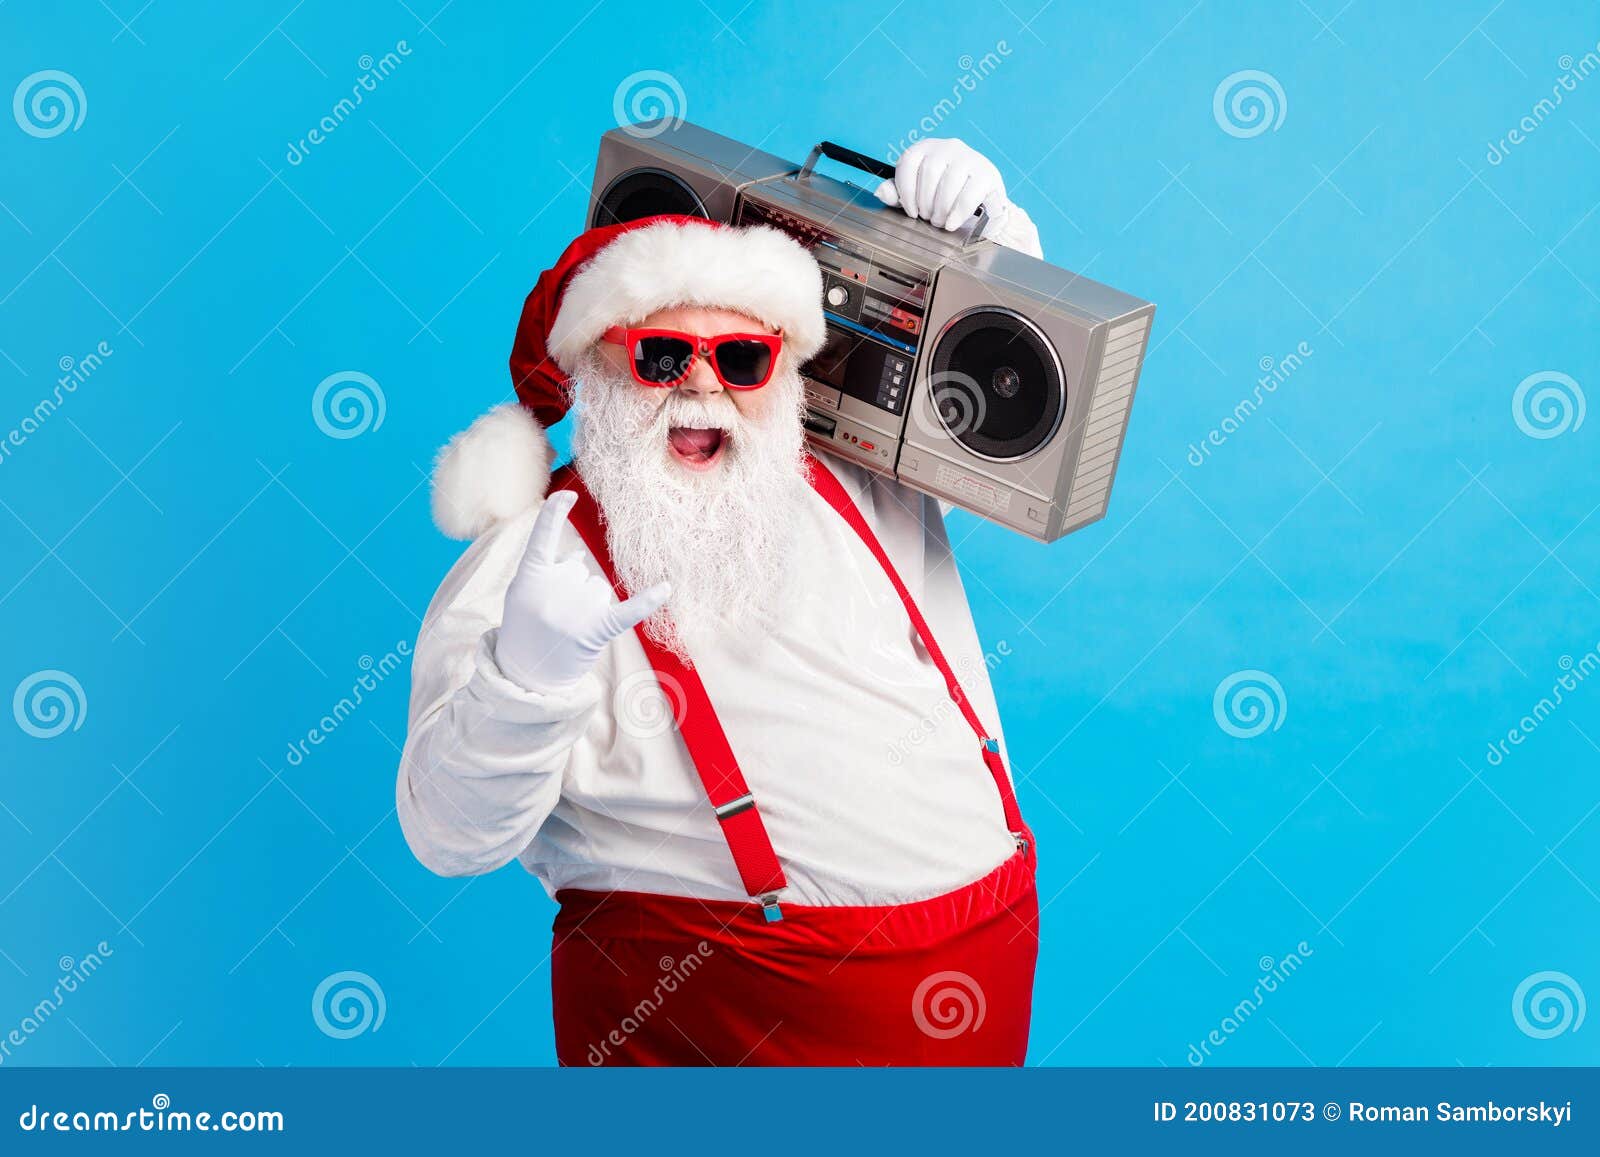 Những hình ảnh đầy chất hiện đại với ông già Noel và mái tóc xám trắng chắc chắn sẽ khiến bạn cảm thấy thật phấn khích. Hãy ghé thăm và cùng nghe nhạc Giáng sinh phù hợp cho phim nền, bạn sẽ không thể rời mắt khỏi màn hình.